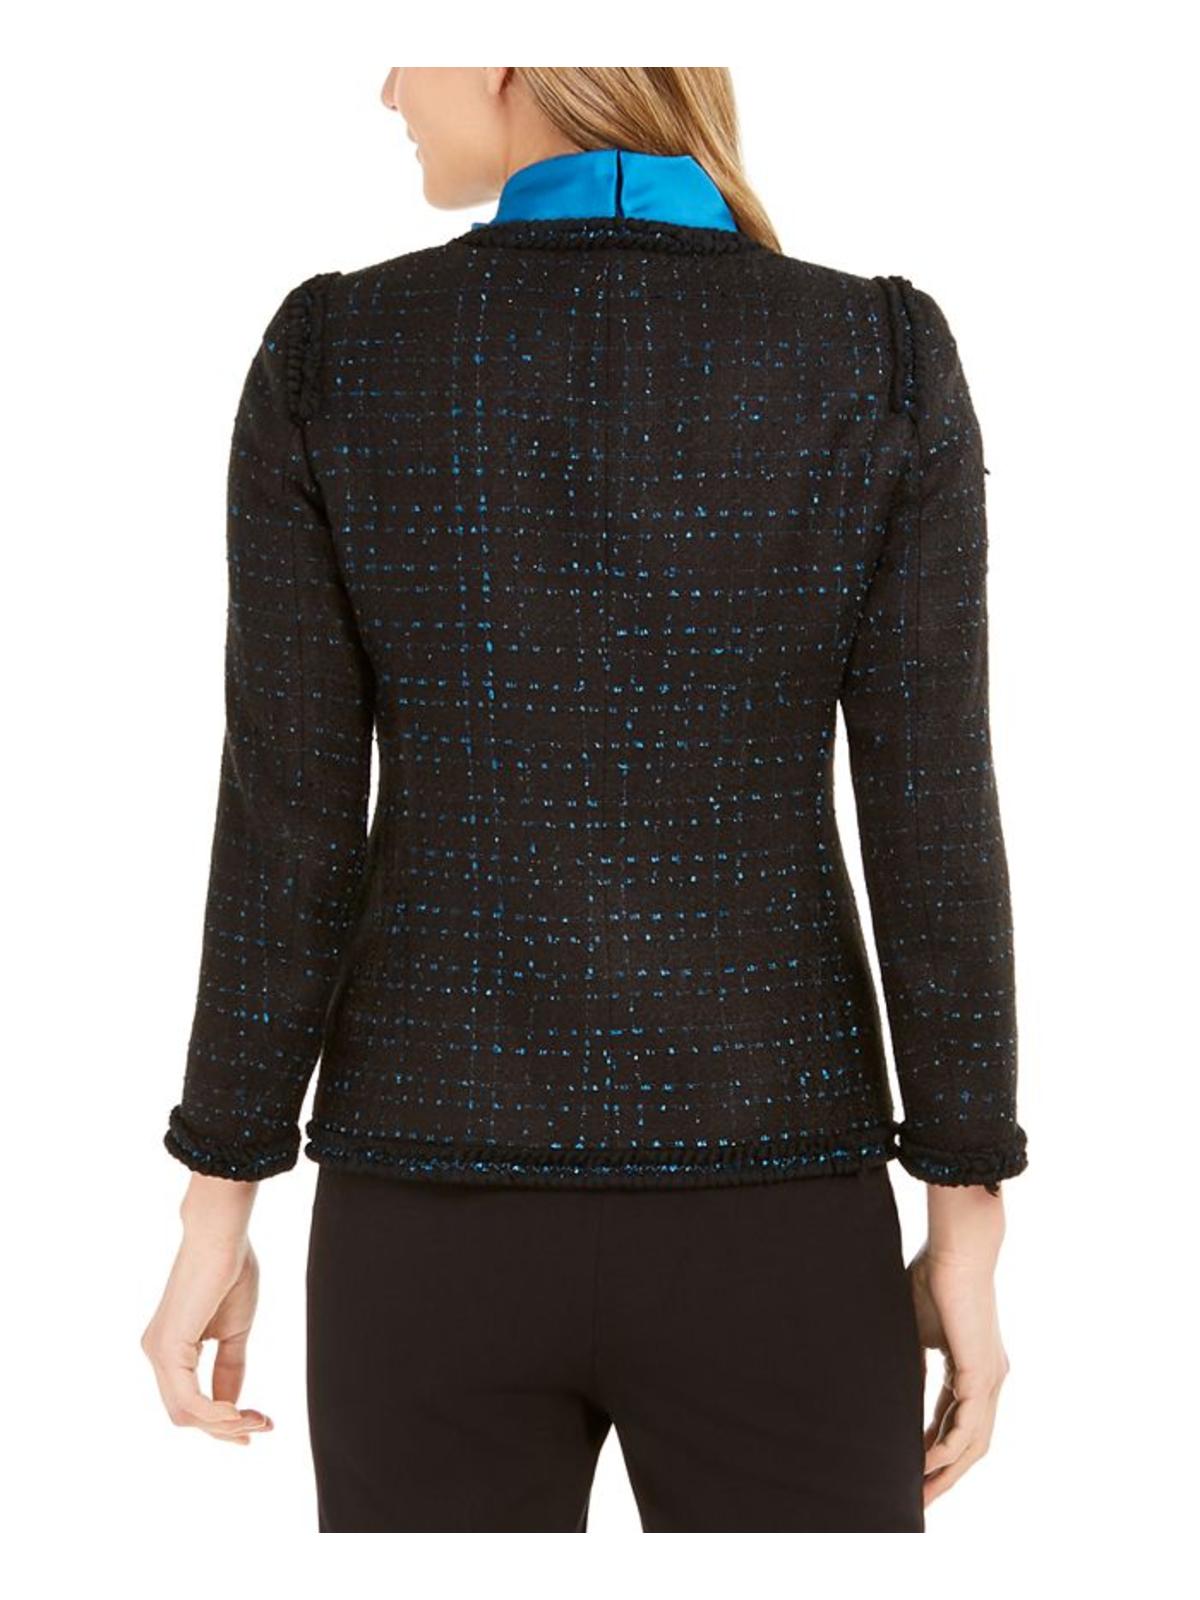 Anne Klein Womens Tweed Colorblock Suit Jacket Black 10 - image 2 of 2